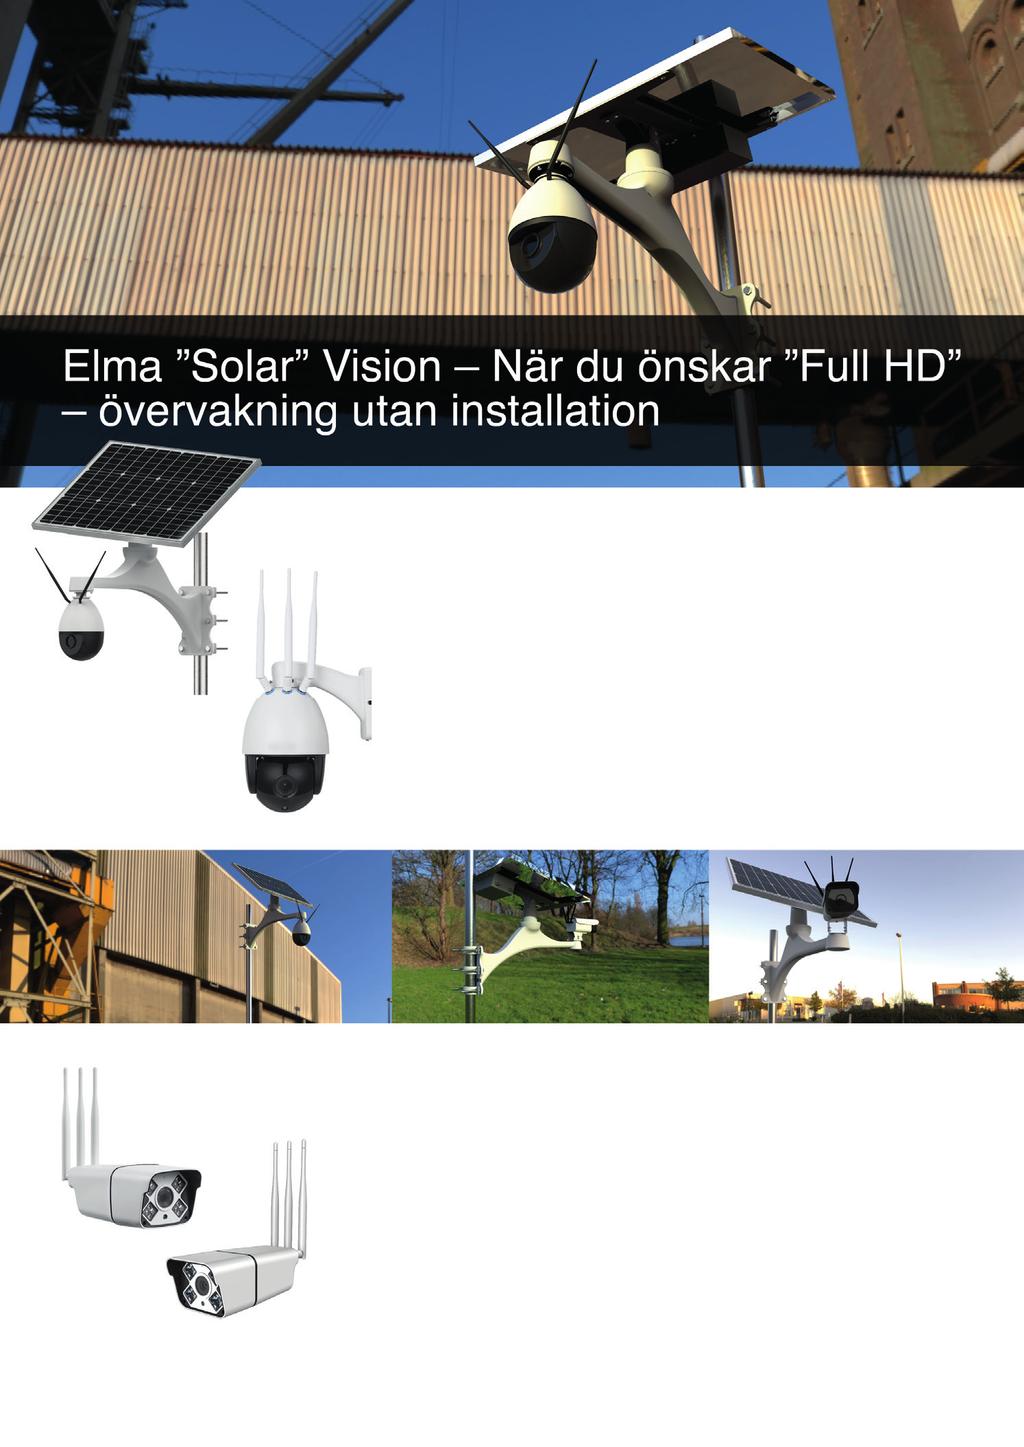 Elma Solar Vision 4G PTZ en övervakningskamera som matas via solenergi och kommunicerar via 4G-nätverket.